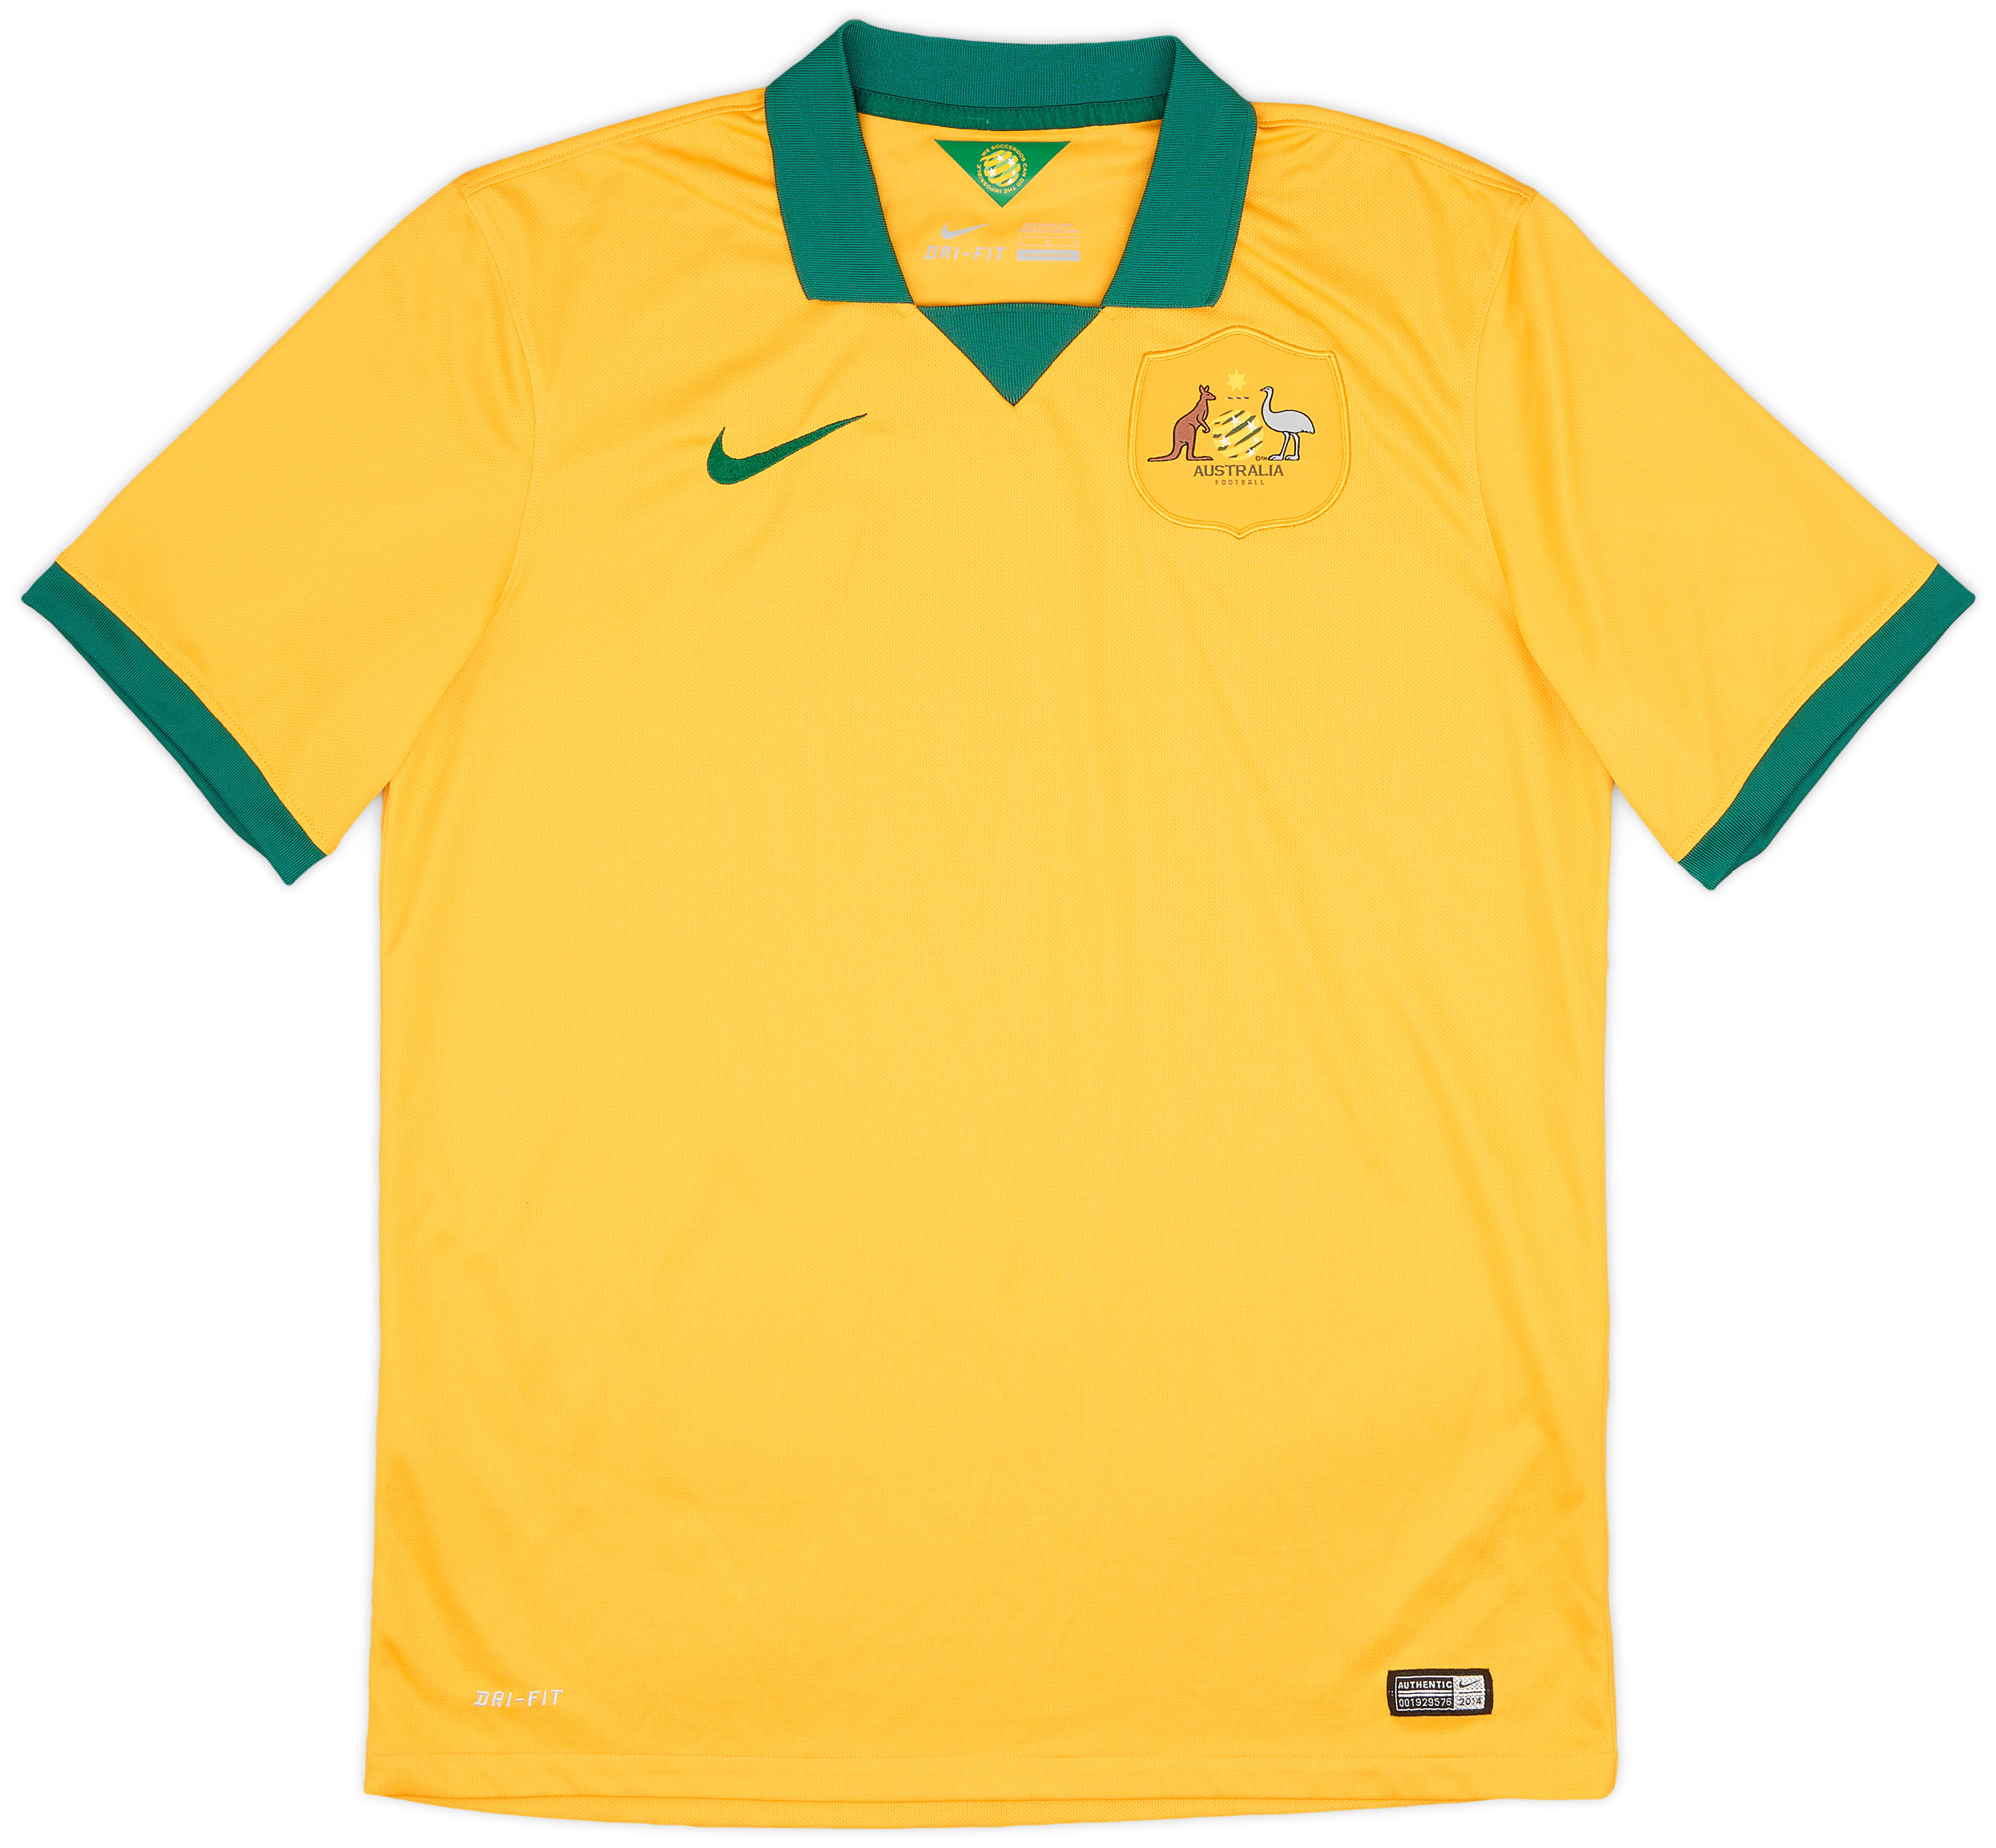 2014-15 Australia Home Shirt - 9/10 - ()